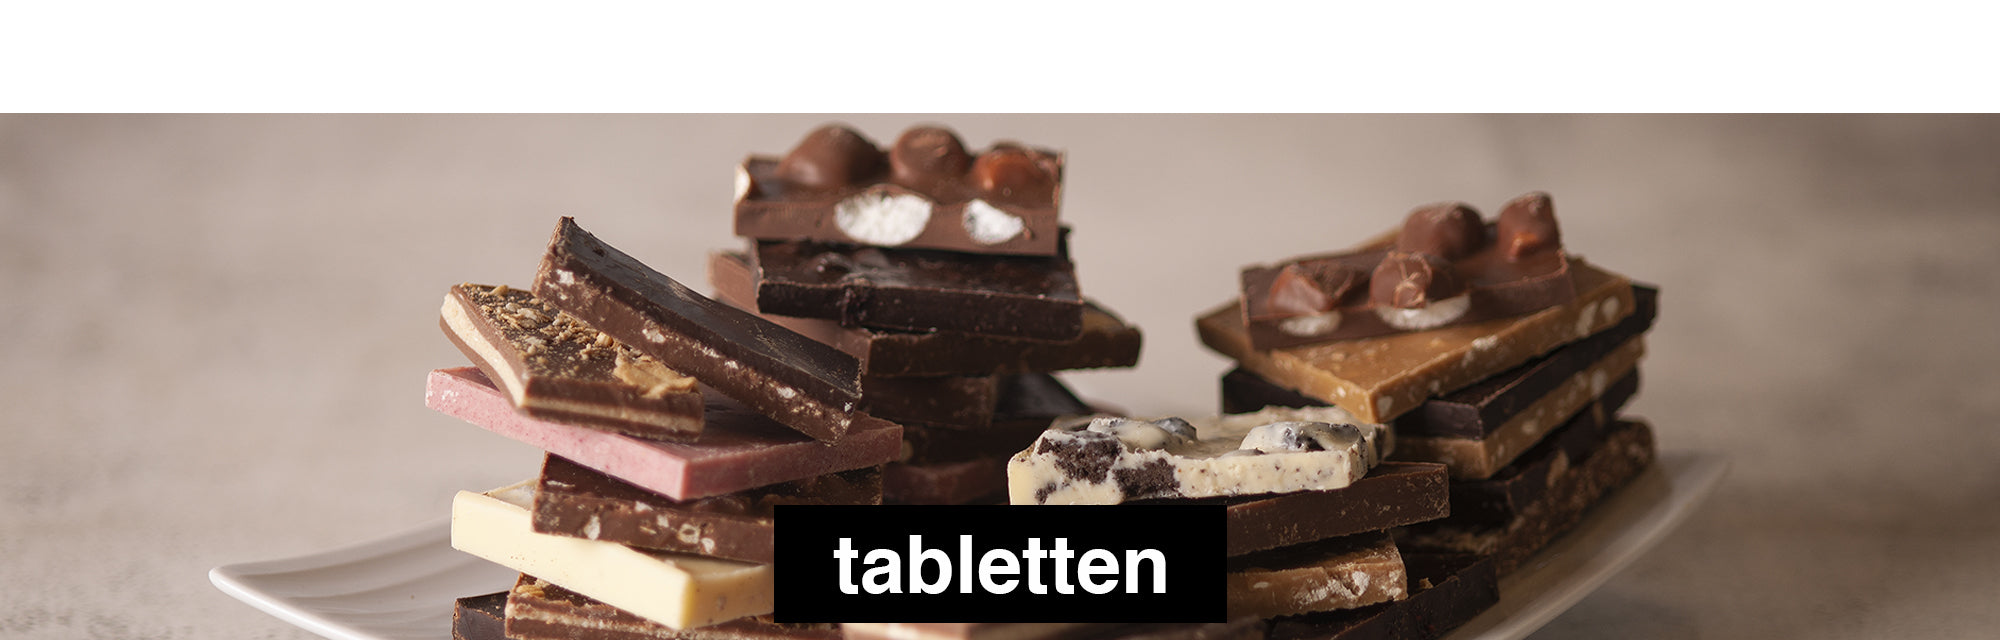 Tabletten - Chocolates en Tabletas